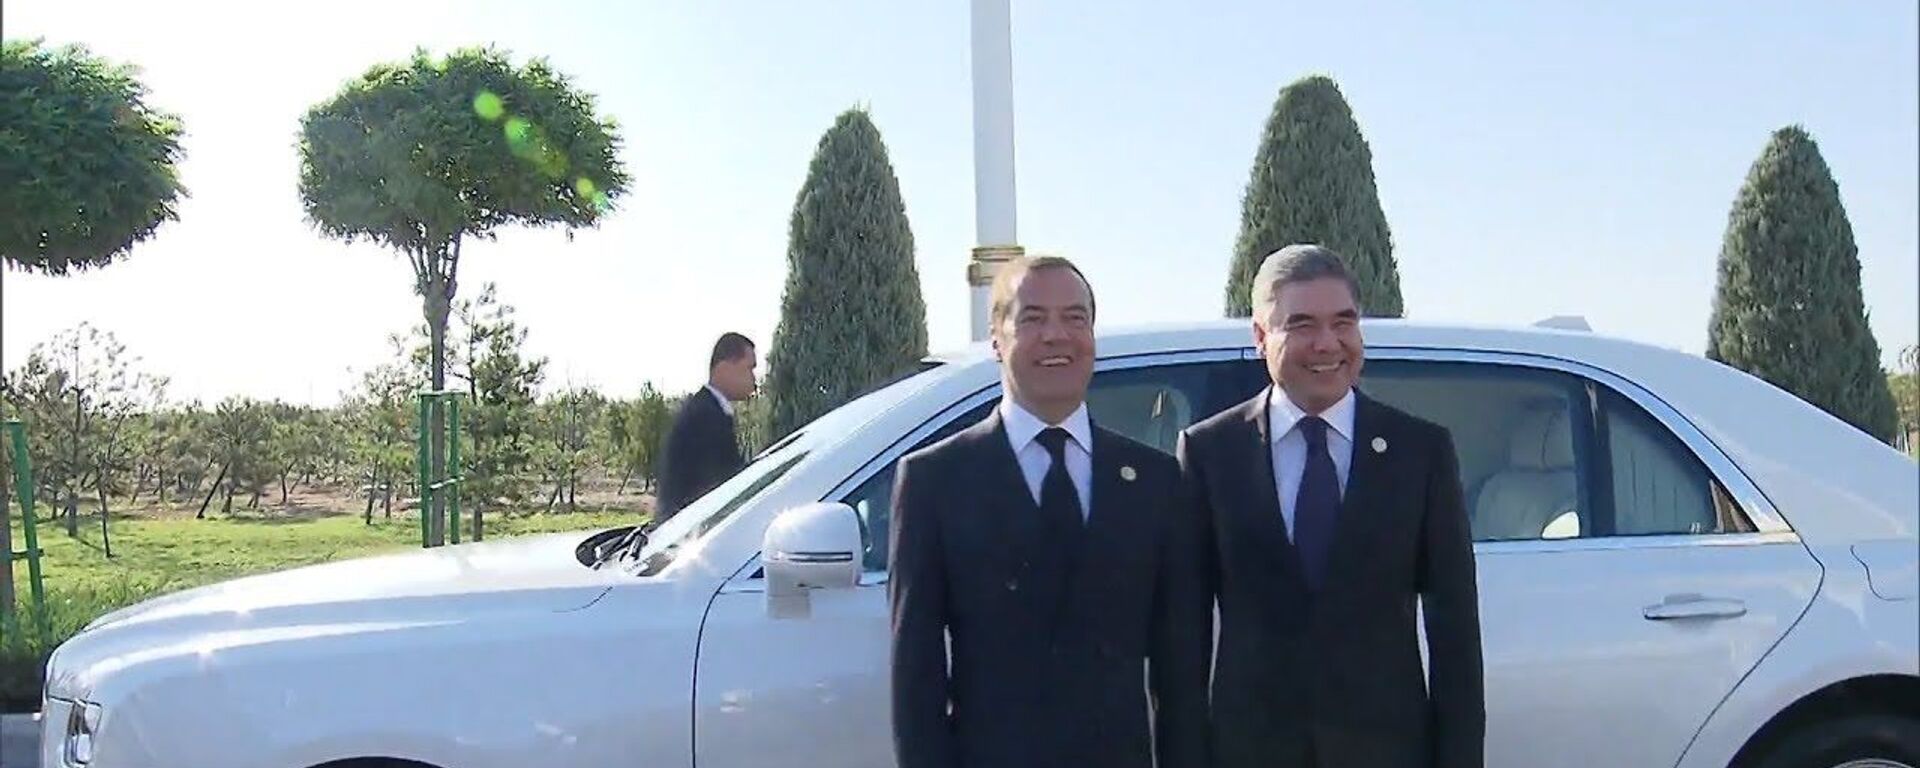 Заявка принята! Президент Туркменистана хочет купить всю линейку Aurus - Sputnik Таджикистан, 1920, 13.08.2019